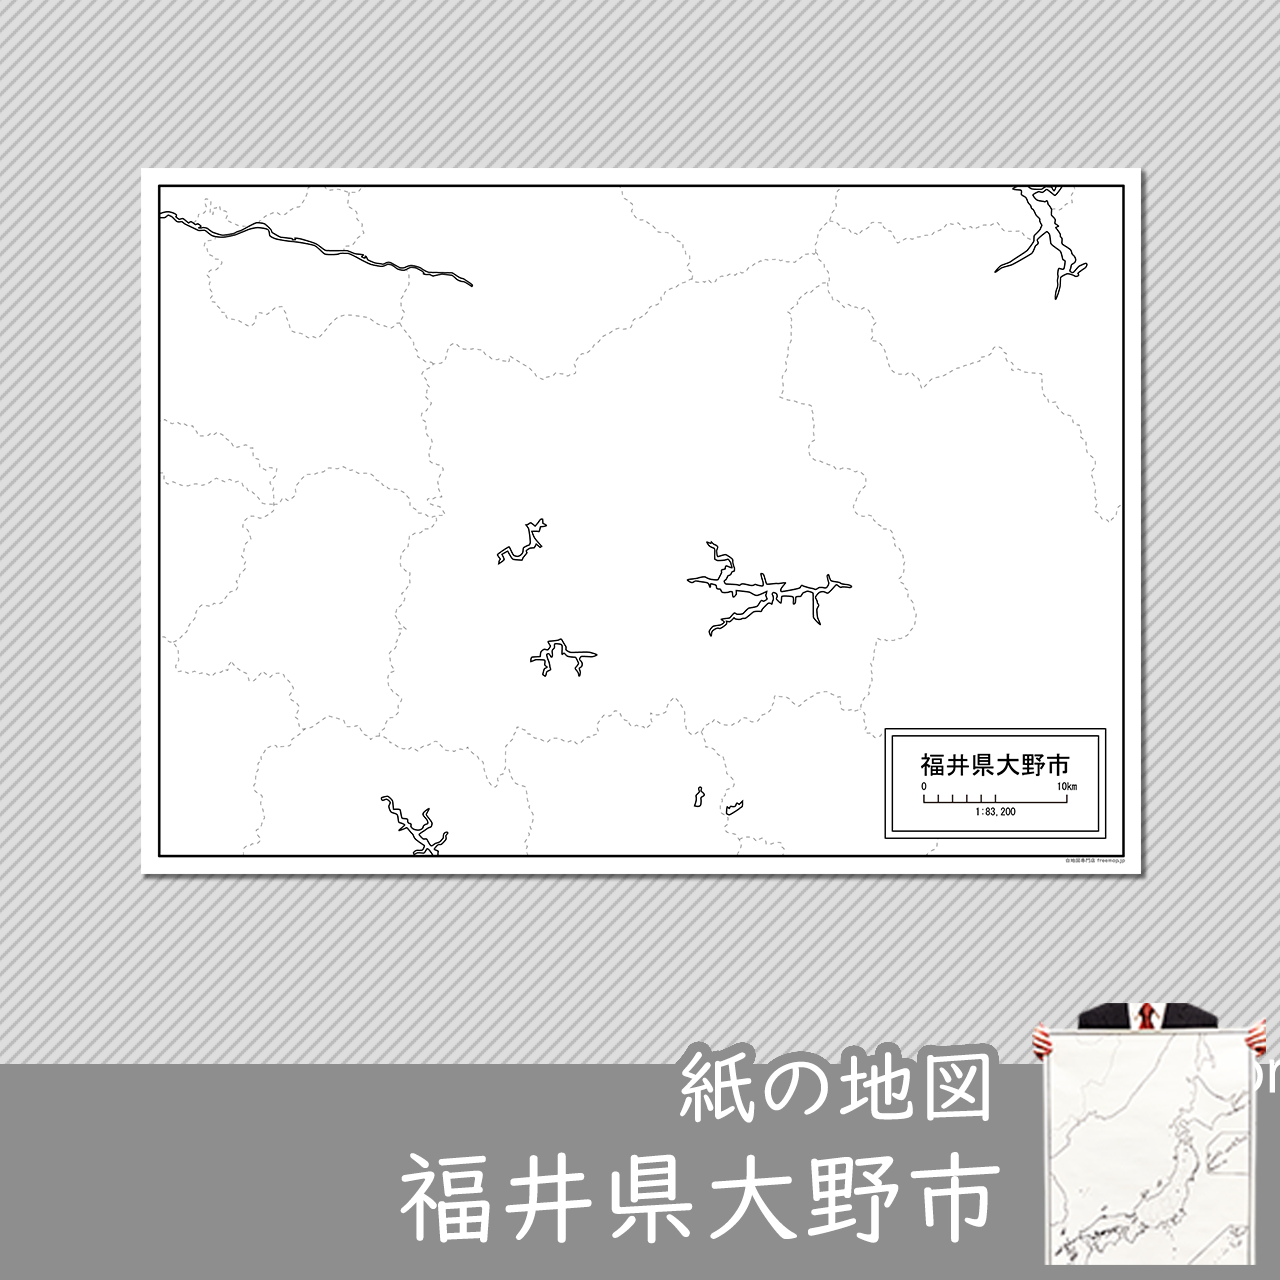 大野市の紙の白地図のサムネイル